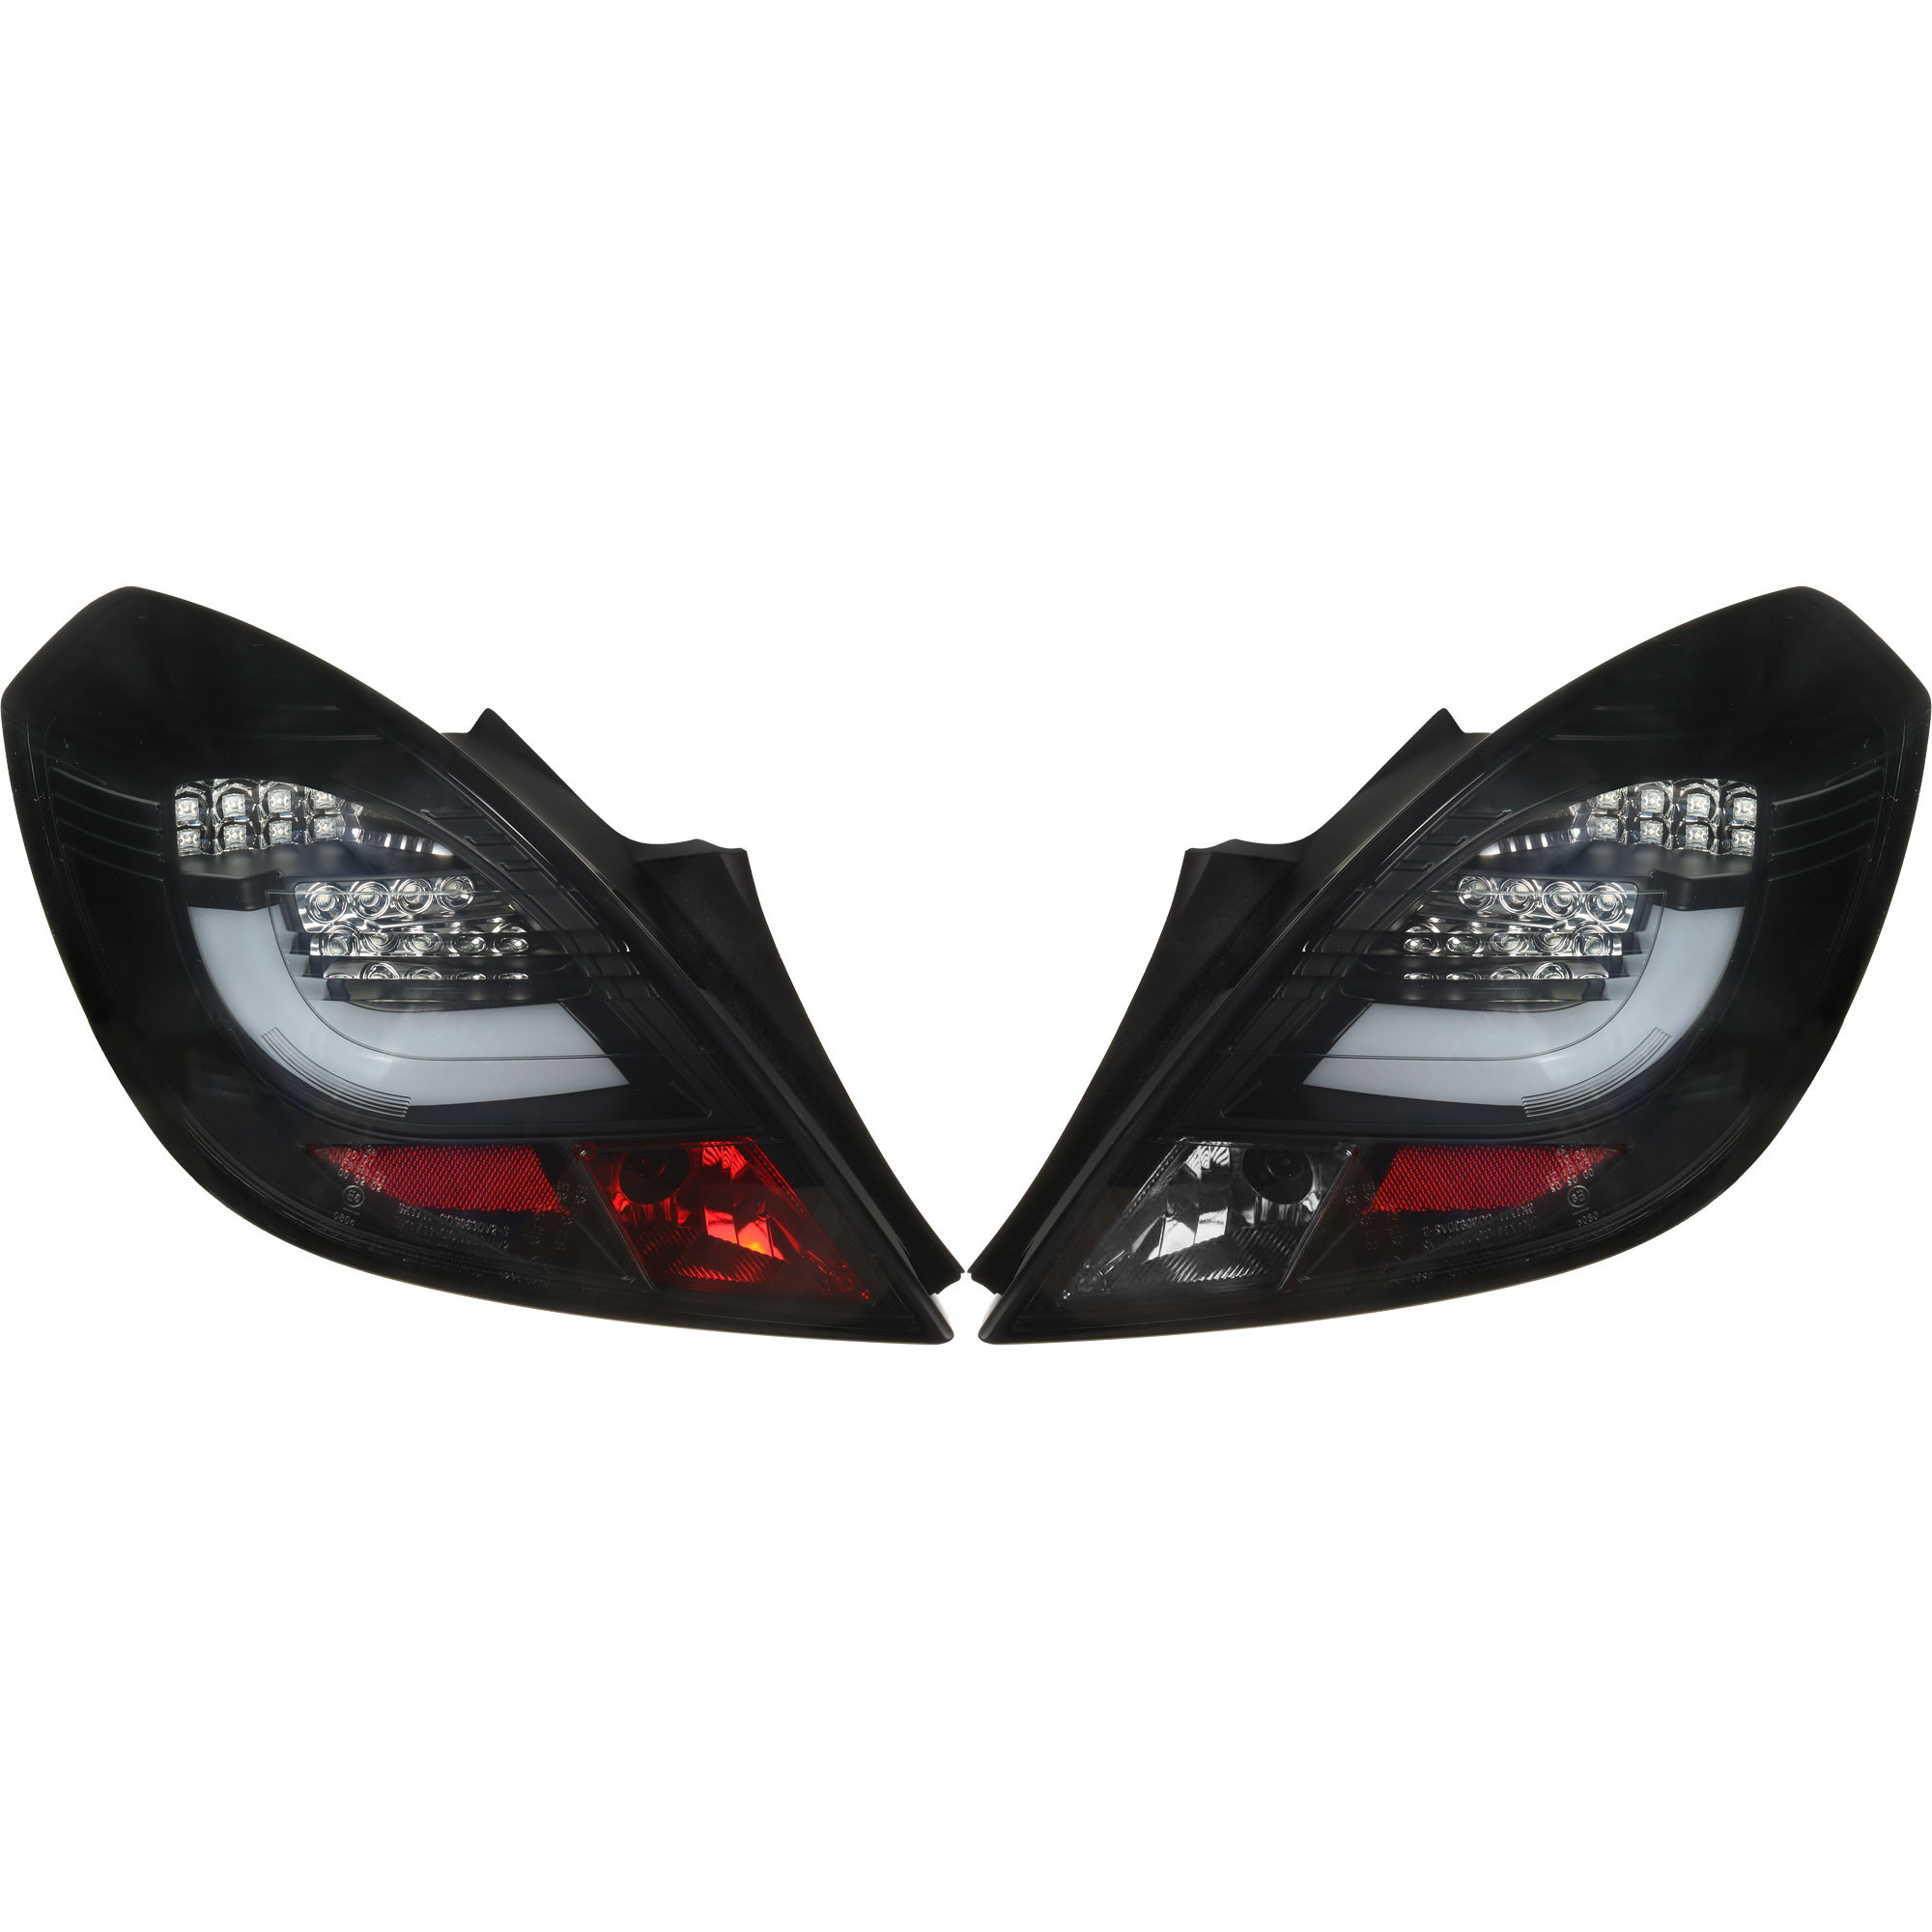 Rückleuchten Set LED Lightbar für Opel Corsa 3 Türer Bj. 06-14 schwarz smoke